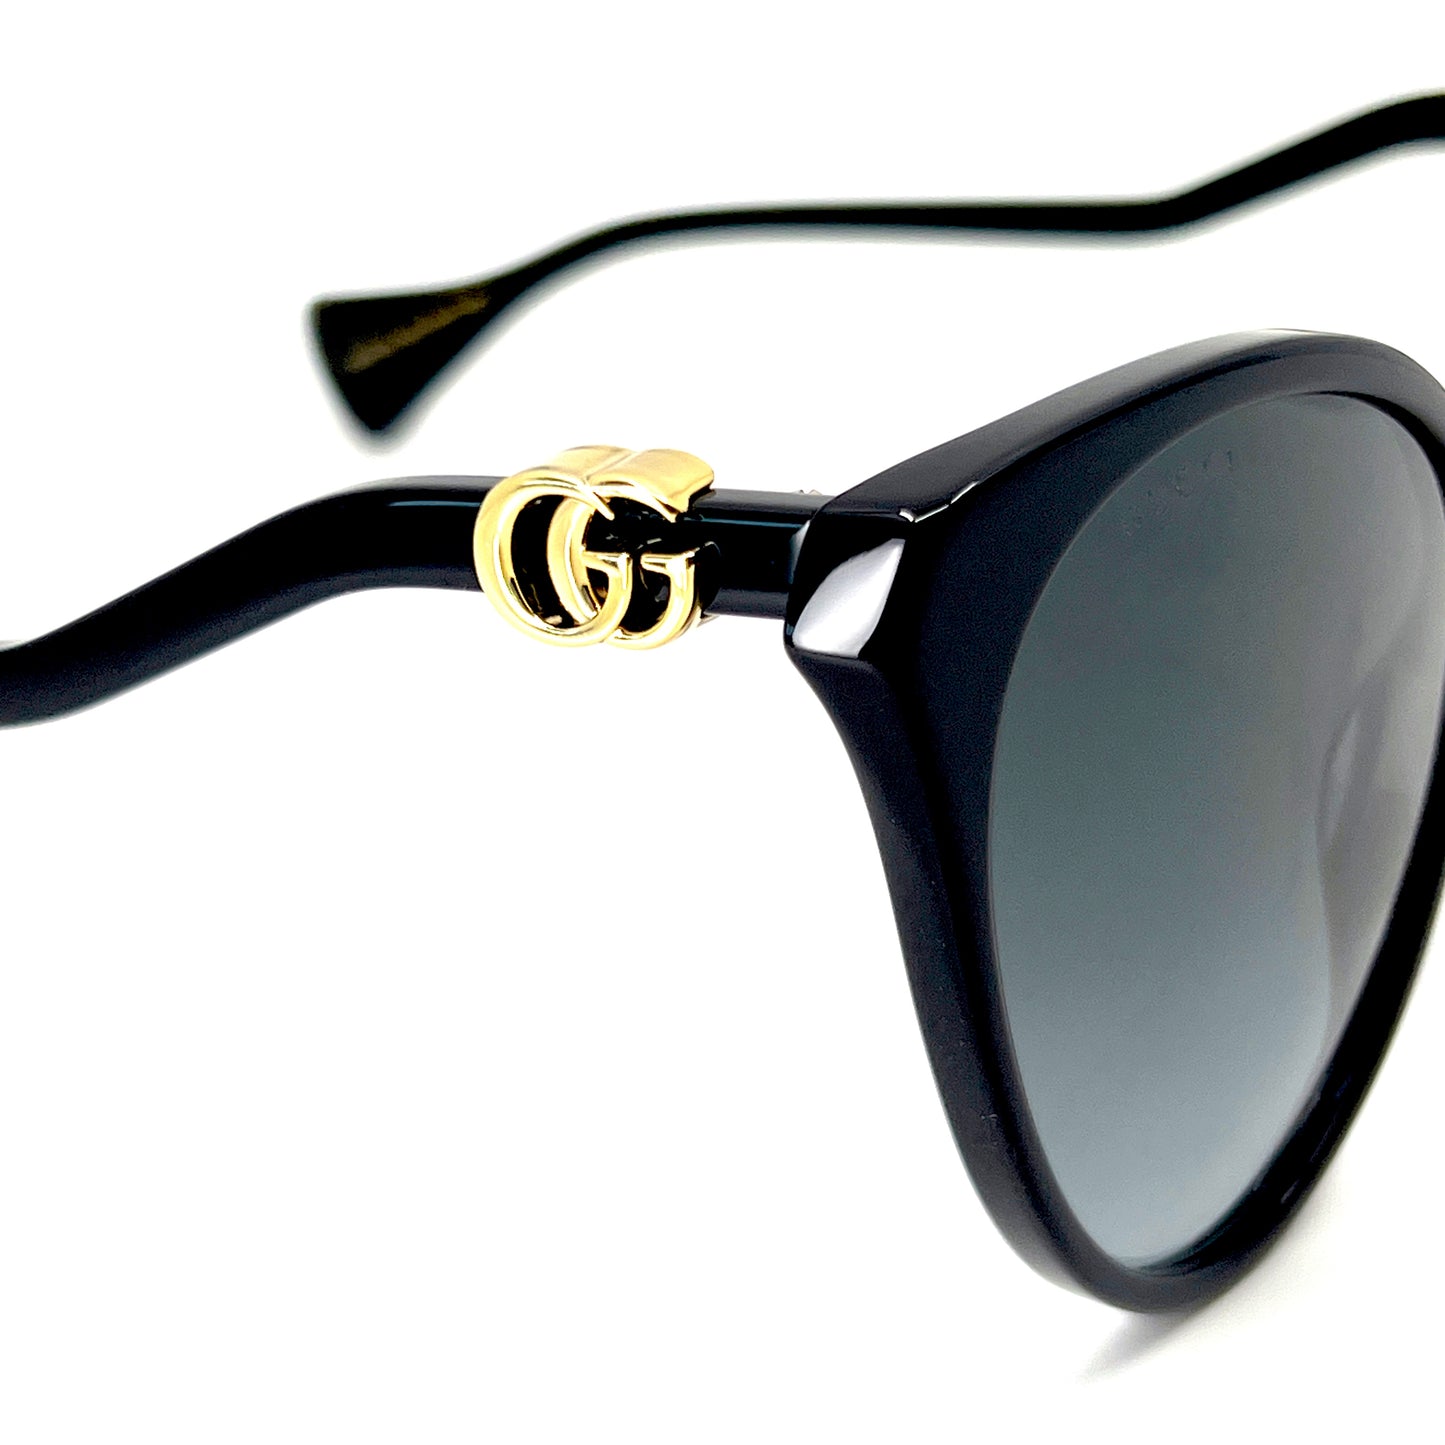 GUCCI Sunglasses GG1011S 001